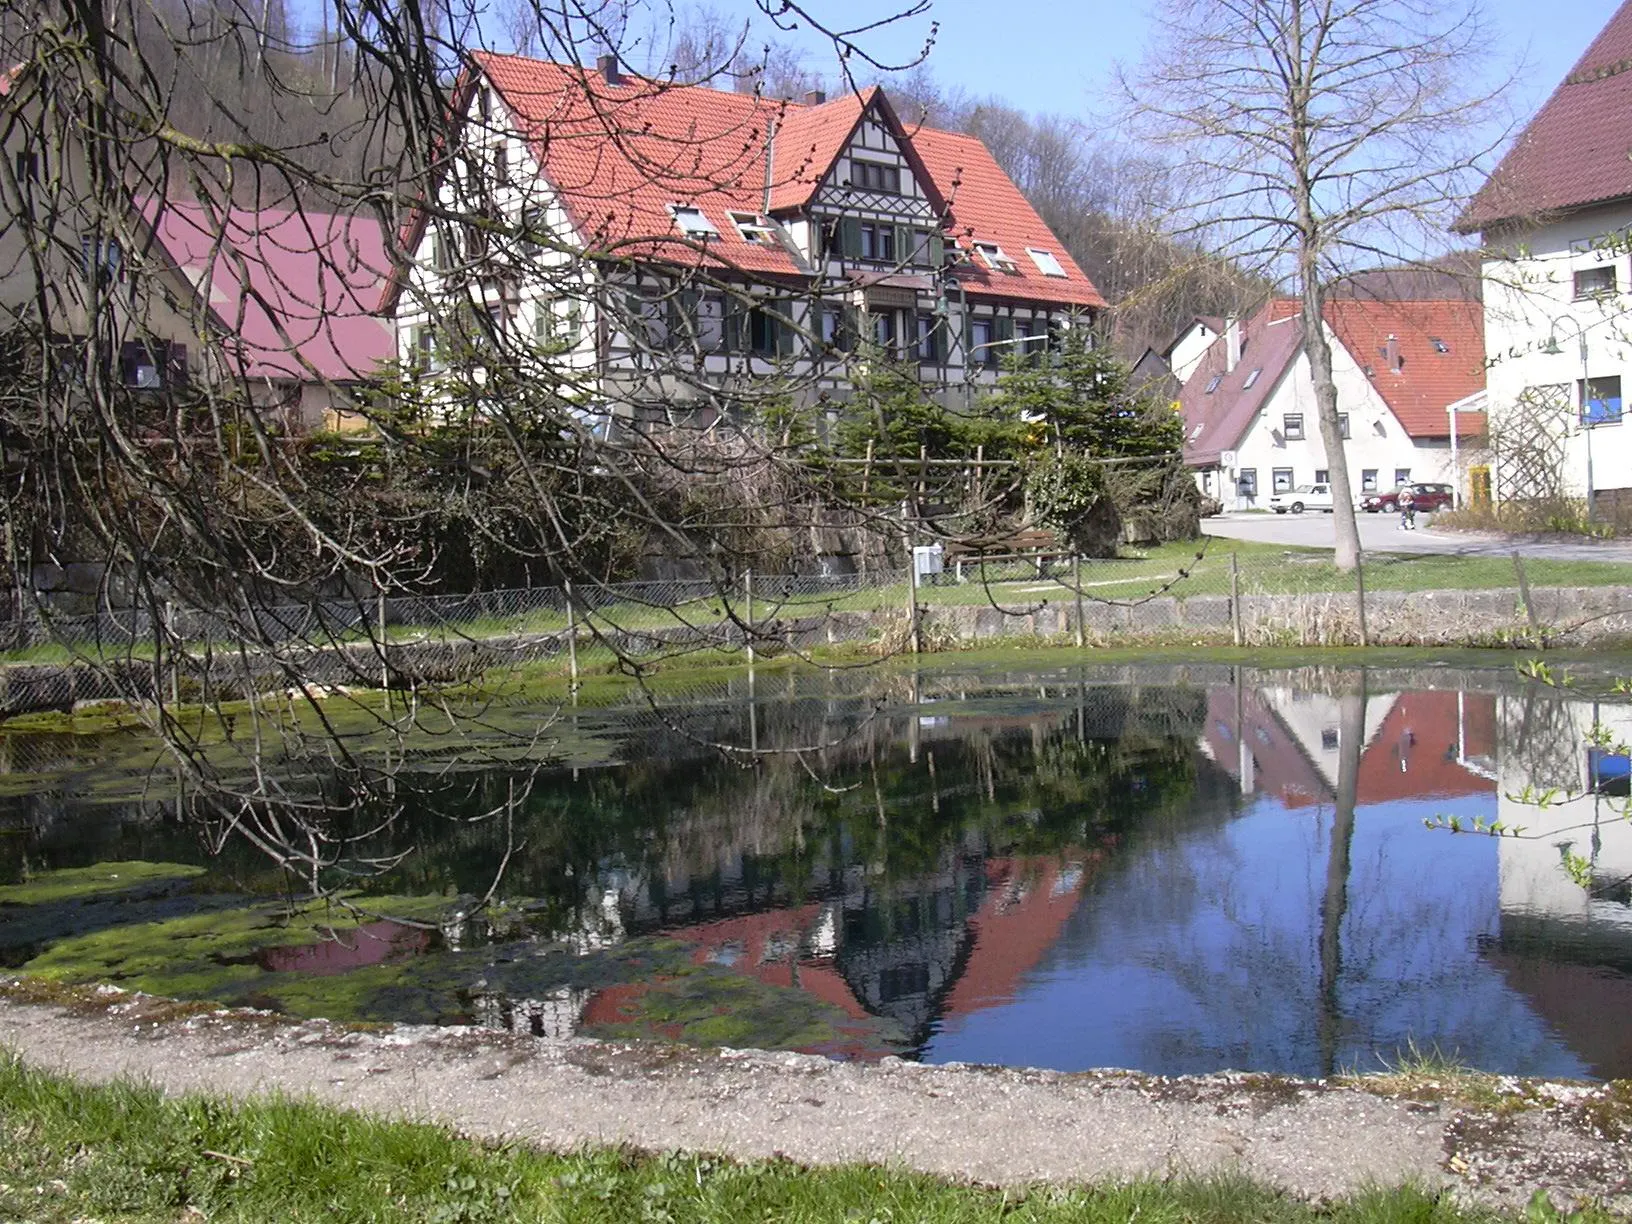 Obrázek Tübingen